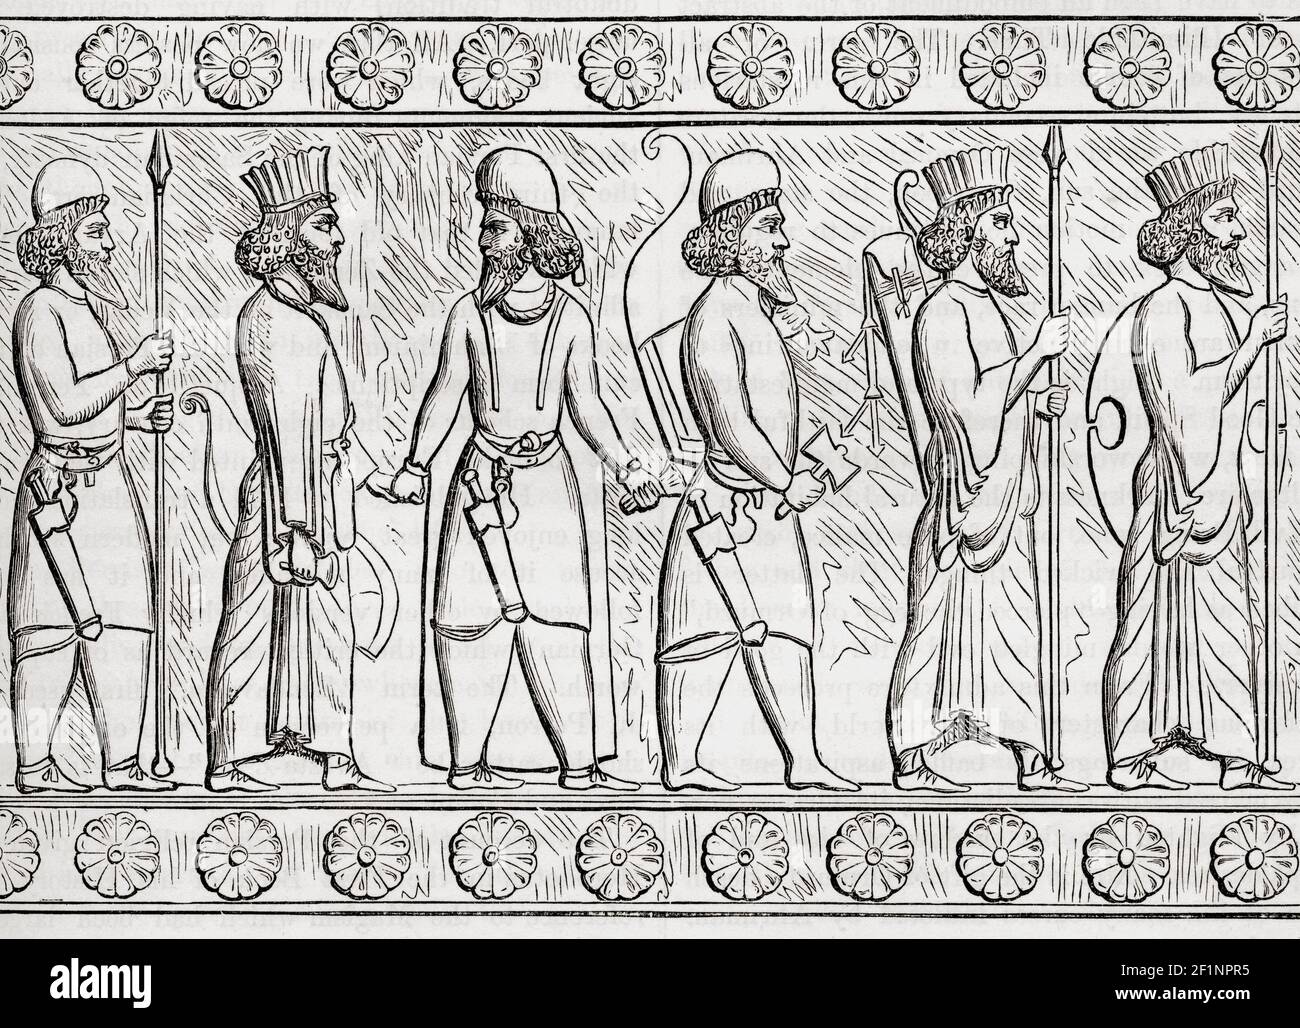 Soldaten aus dem alten Persien. Aus Cassells Universal History, veröffentlicht 1888. Stockfoto